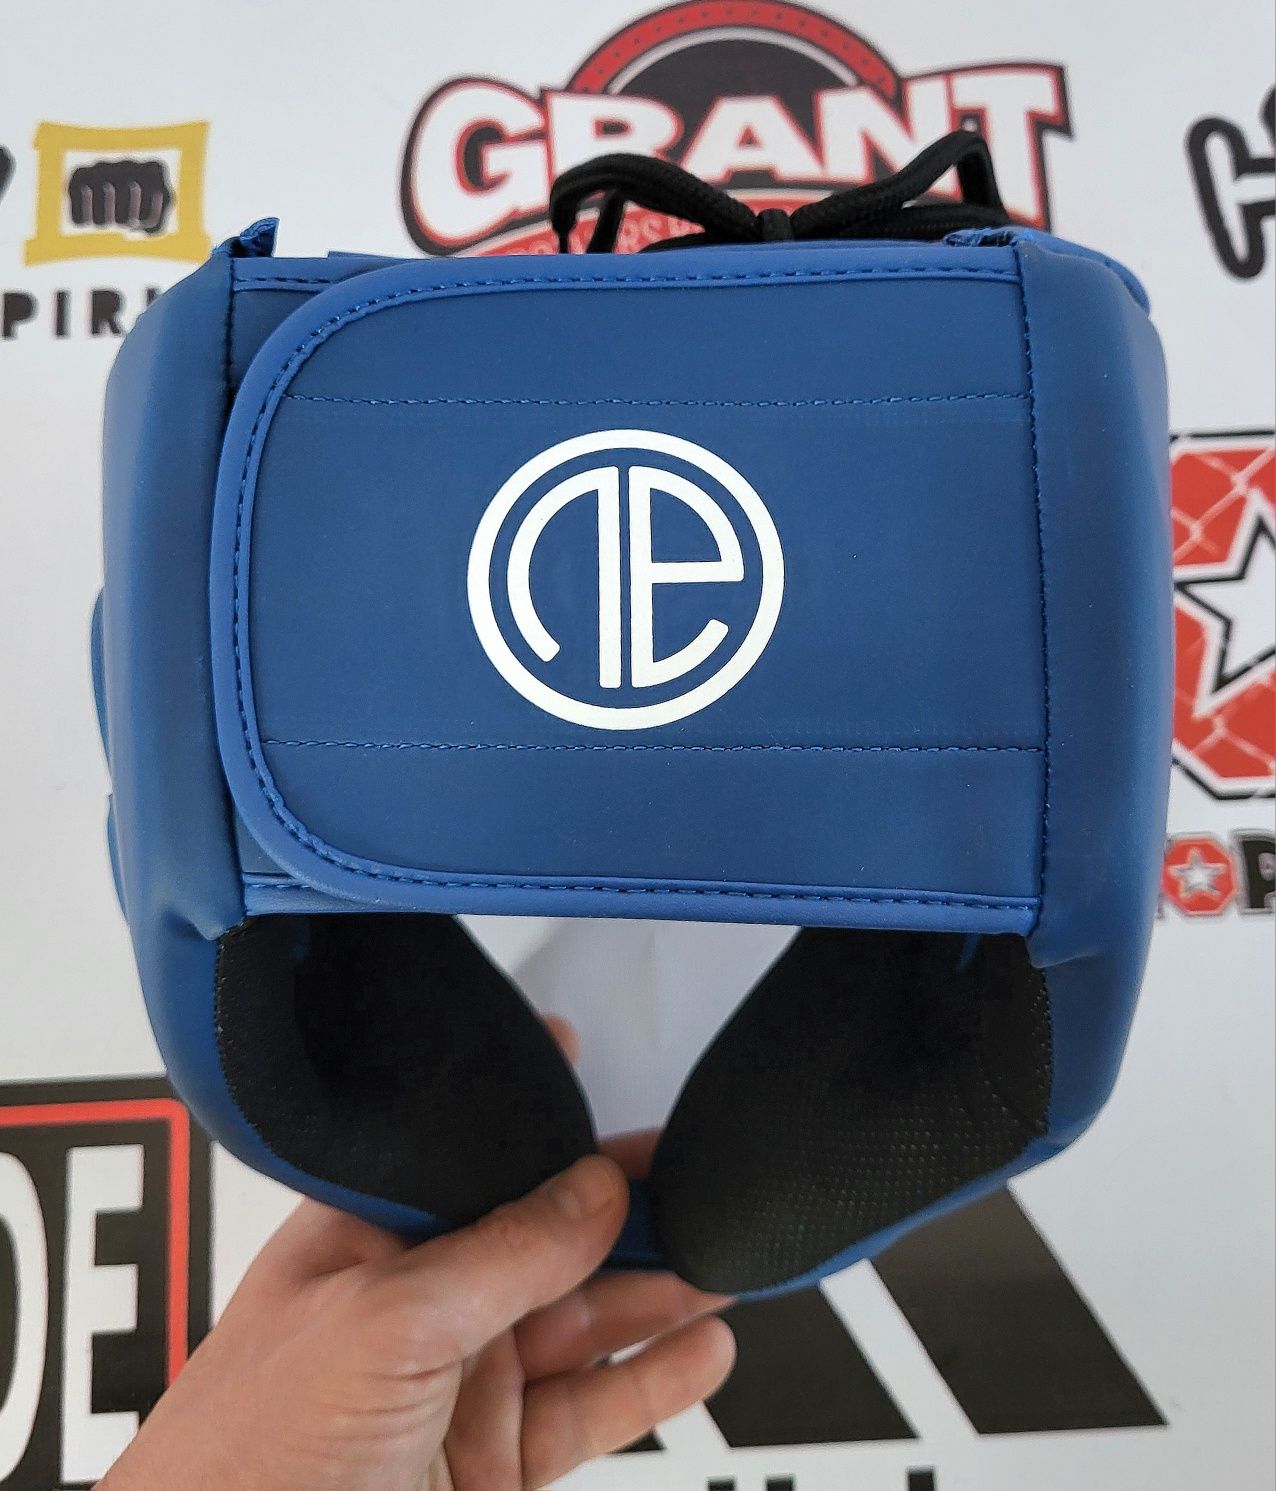 One Athletic Contender L-XL Оригінал боксерський шолом відкритий Мма